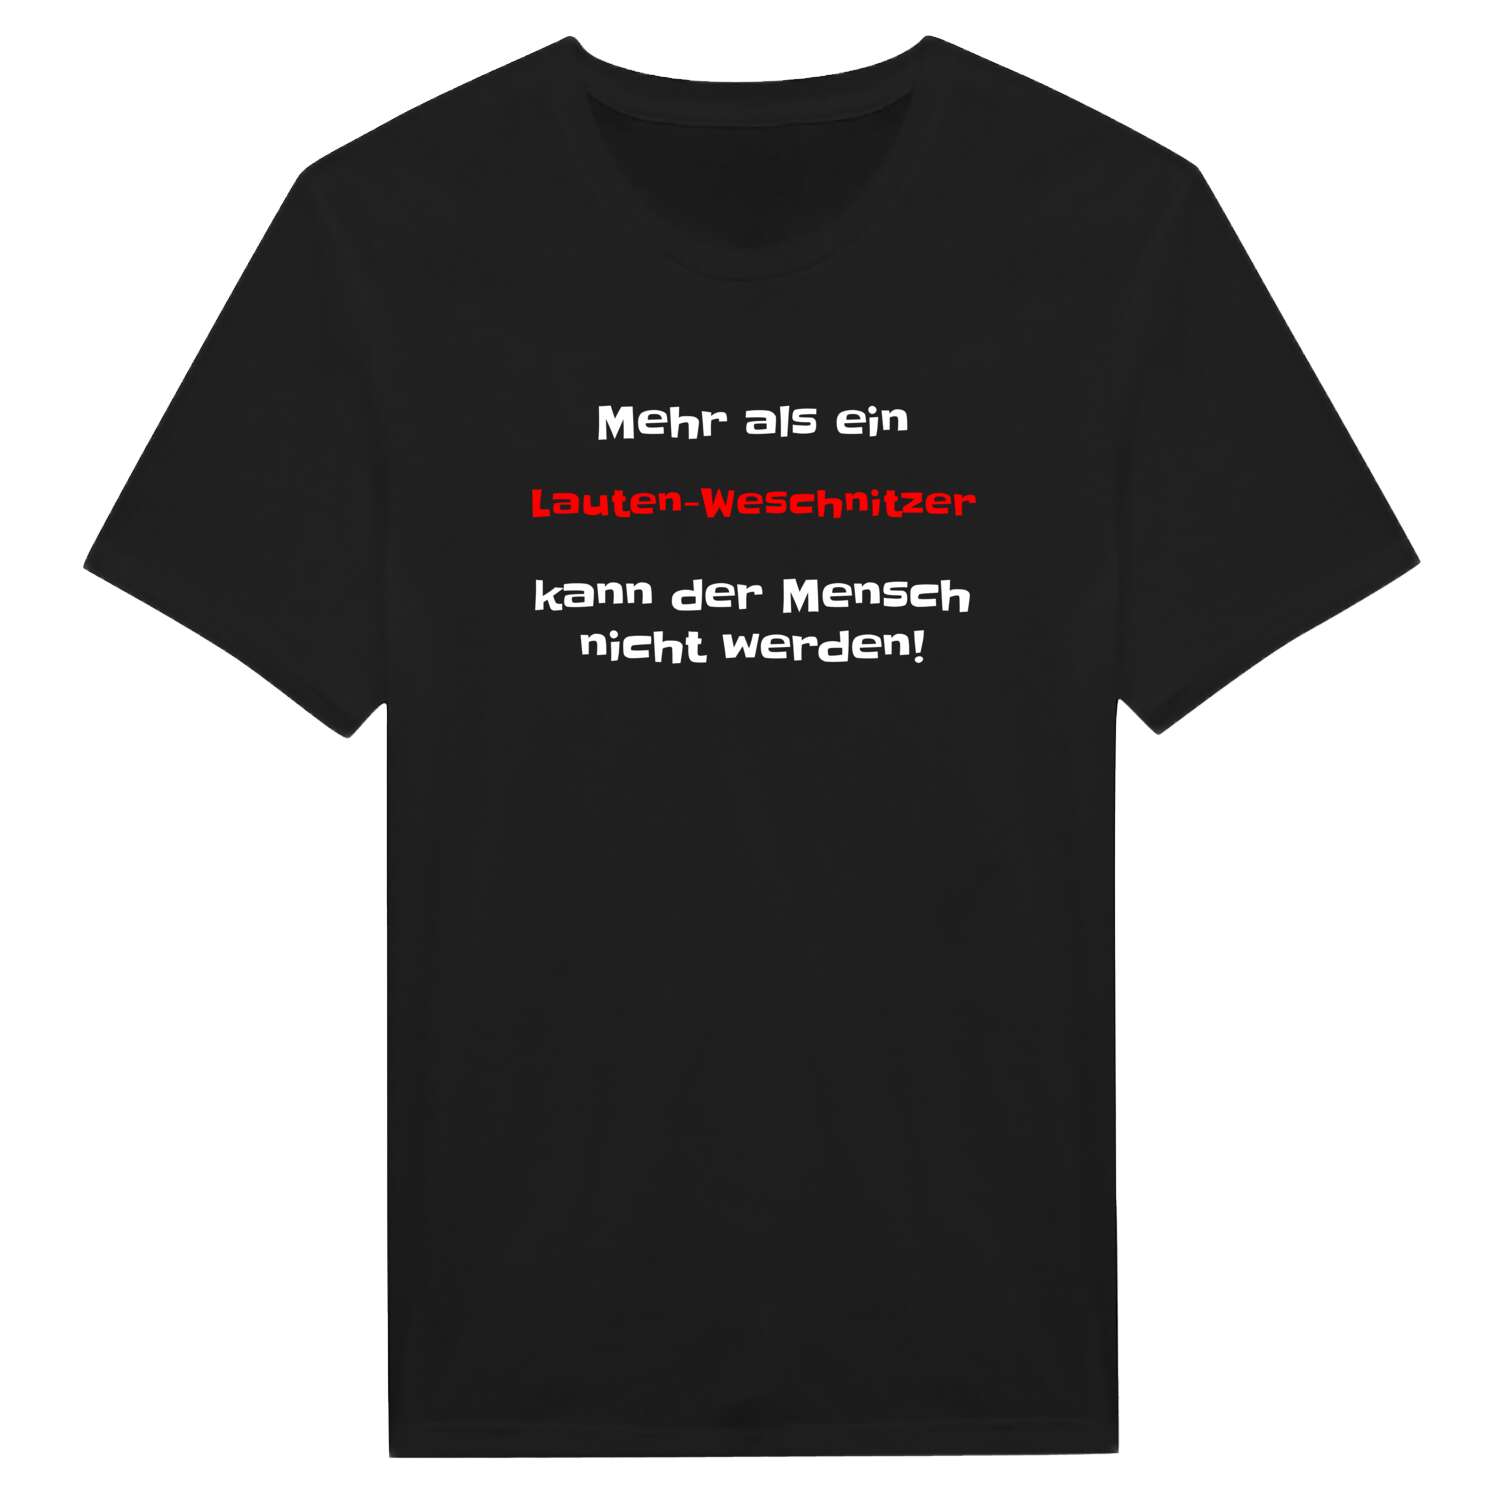 Lauten-Weschnitz T-Shirt »Mehr als ein«